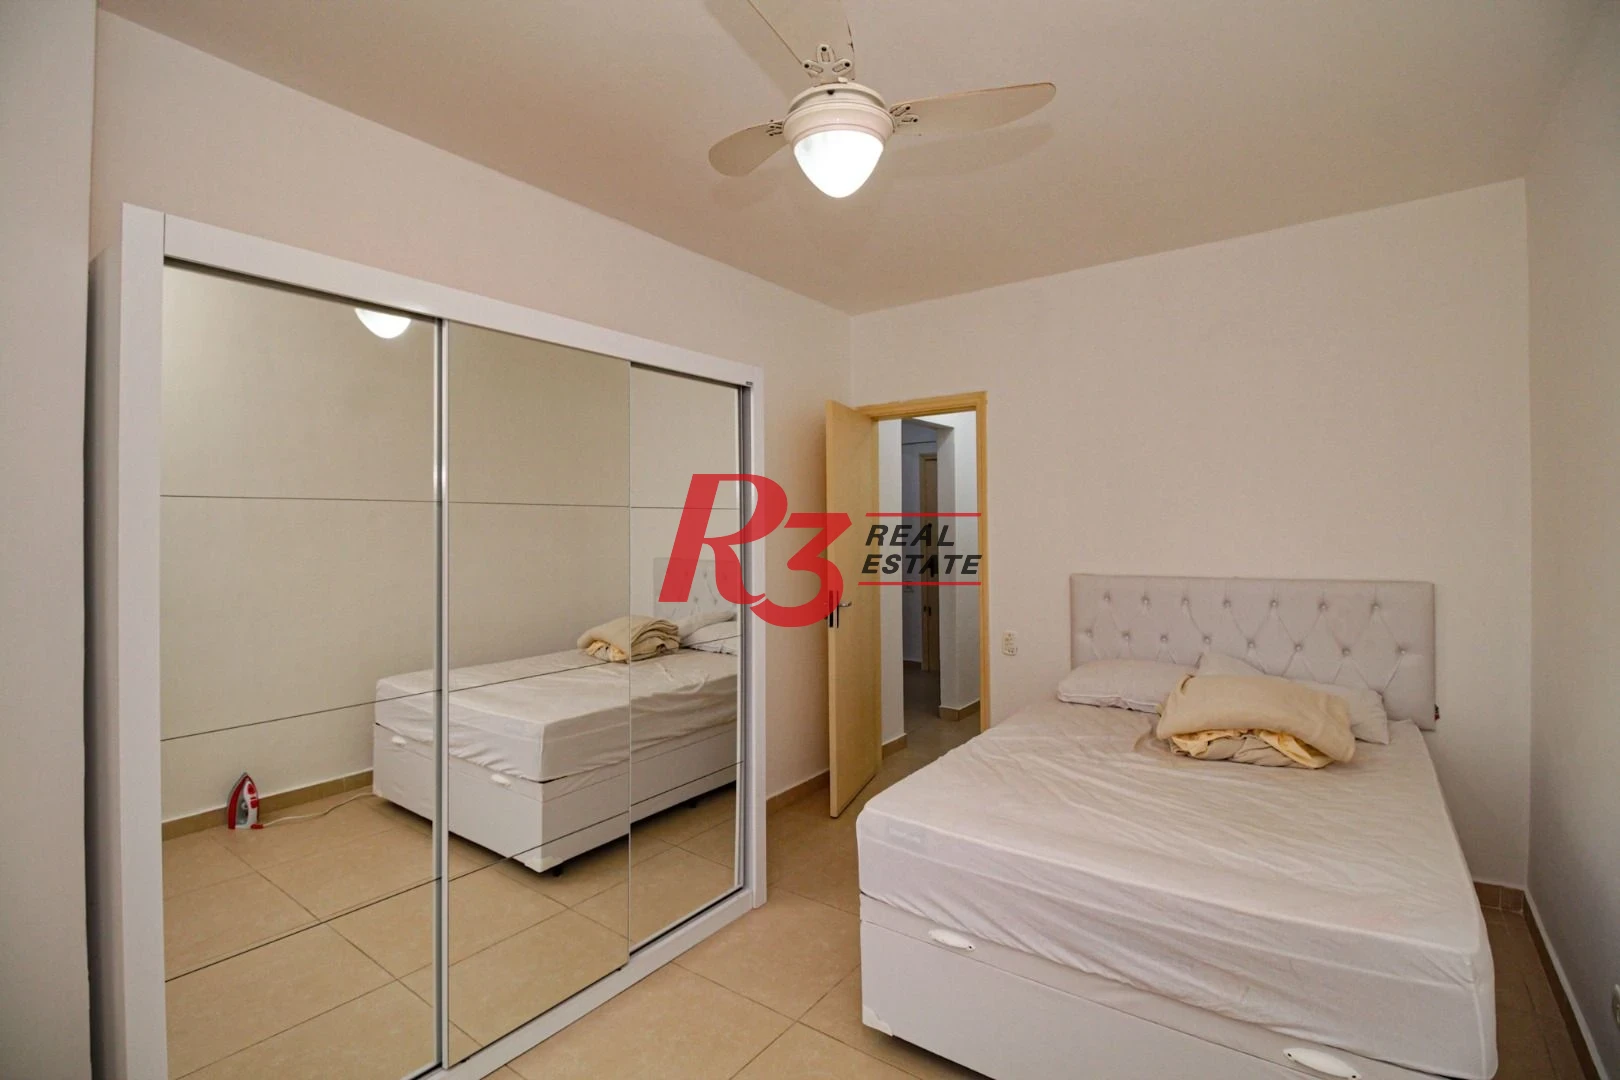 Apartamento à venda, 52 m² por R$ 300.000,00 - Centro - São Vicente/SP